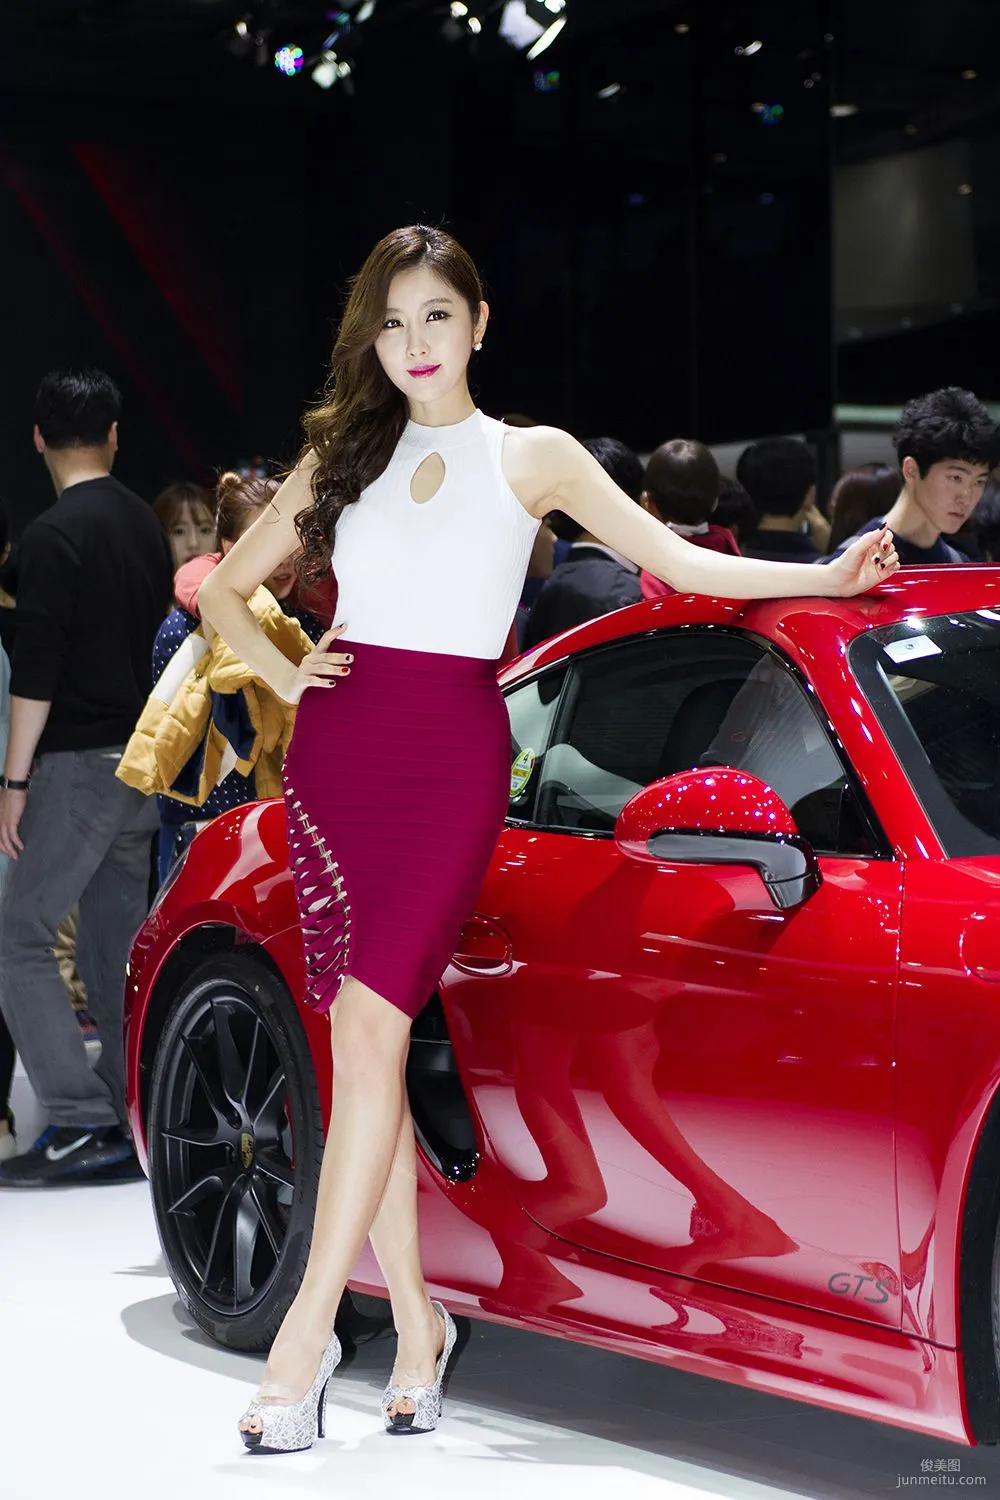 韩国车模崔星雅/崔星儿《车展红色套裙系列》图片合辑10